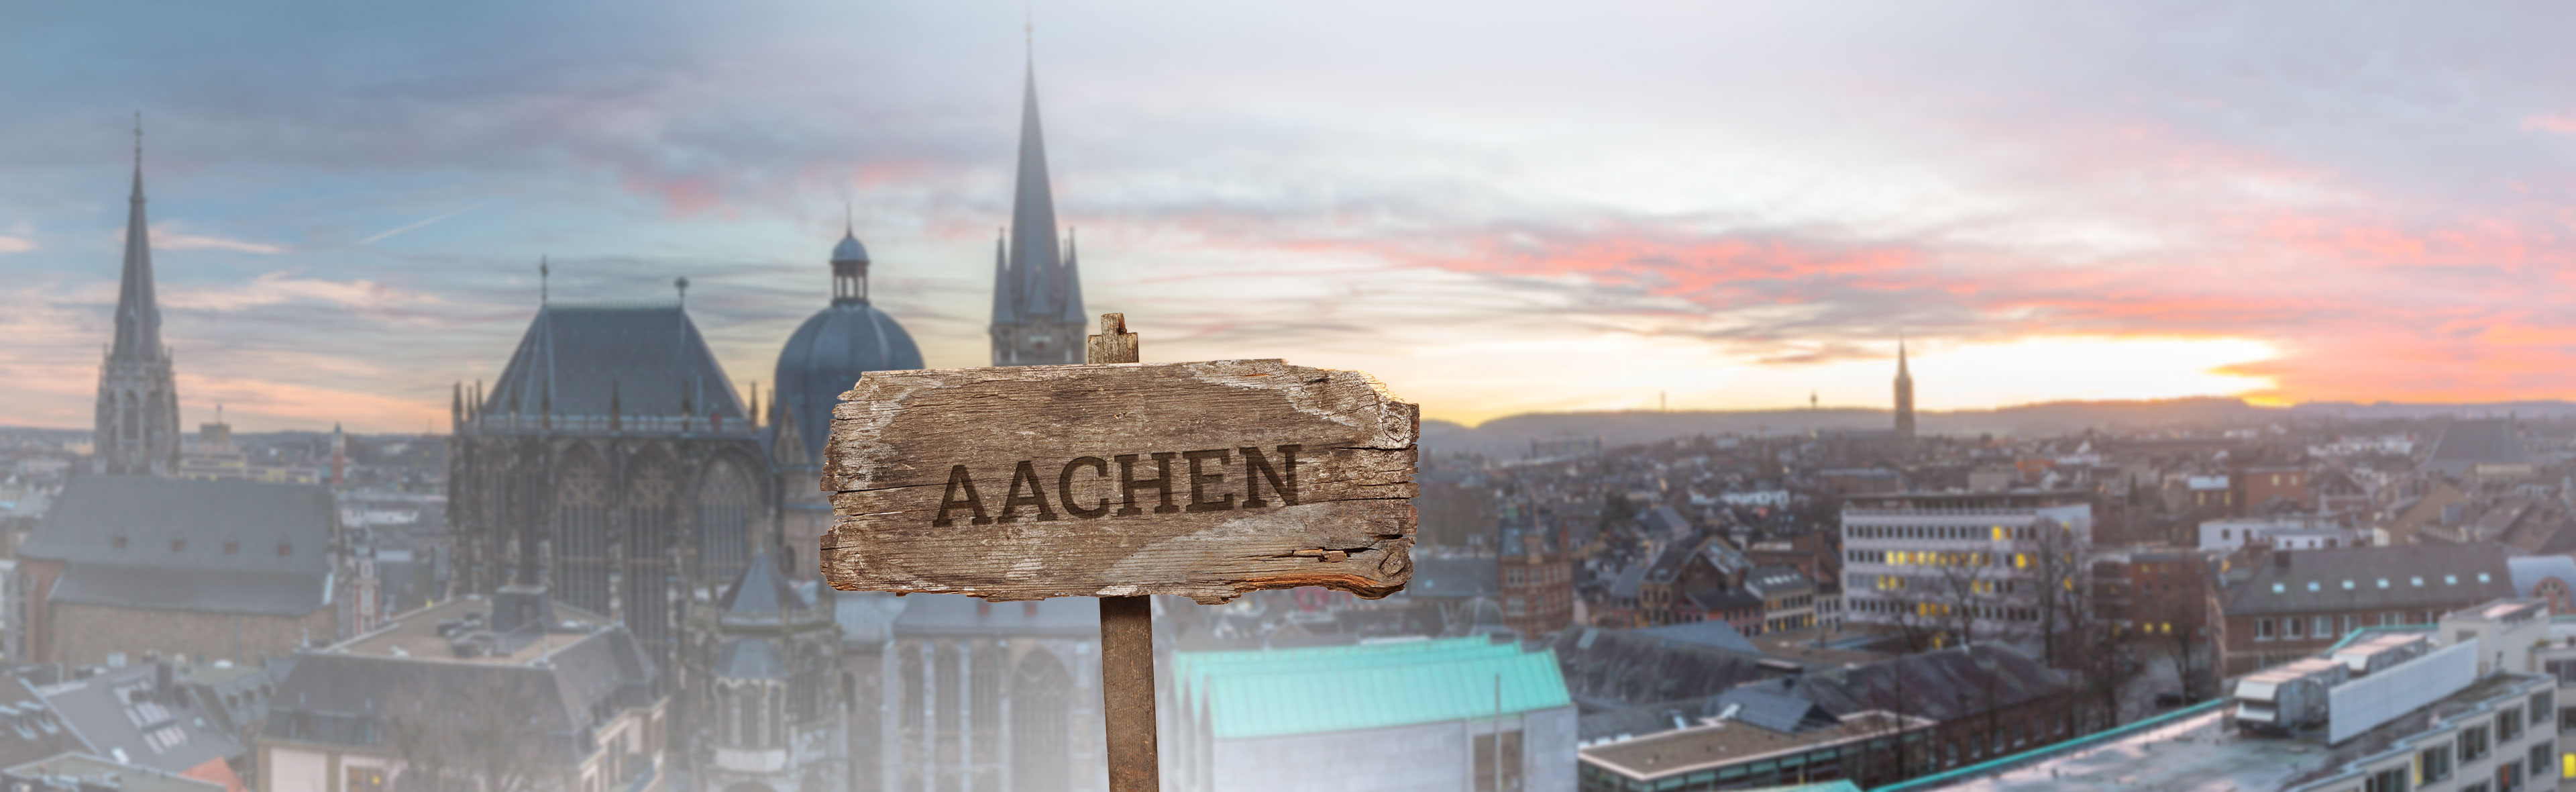 Bienenpatenschaft Aachen